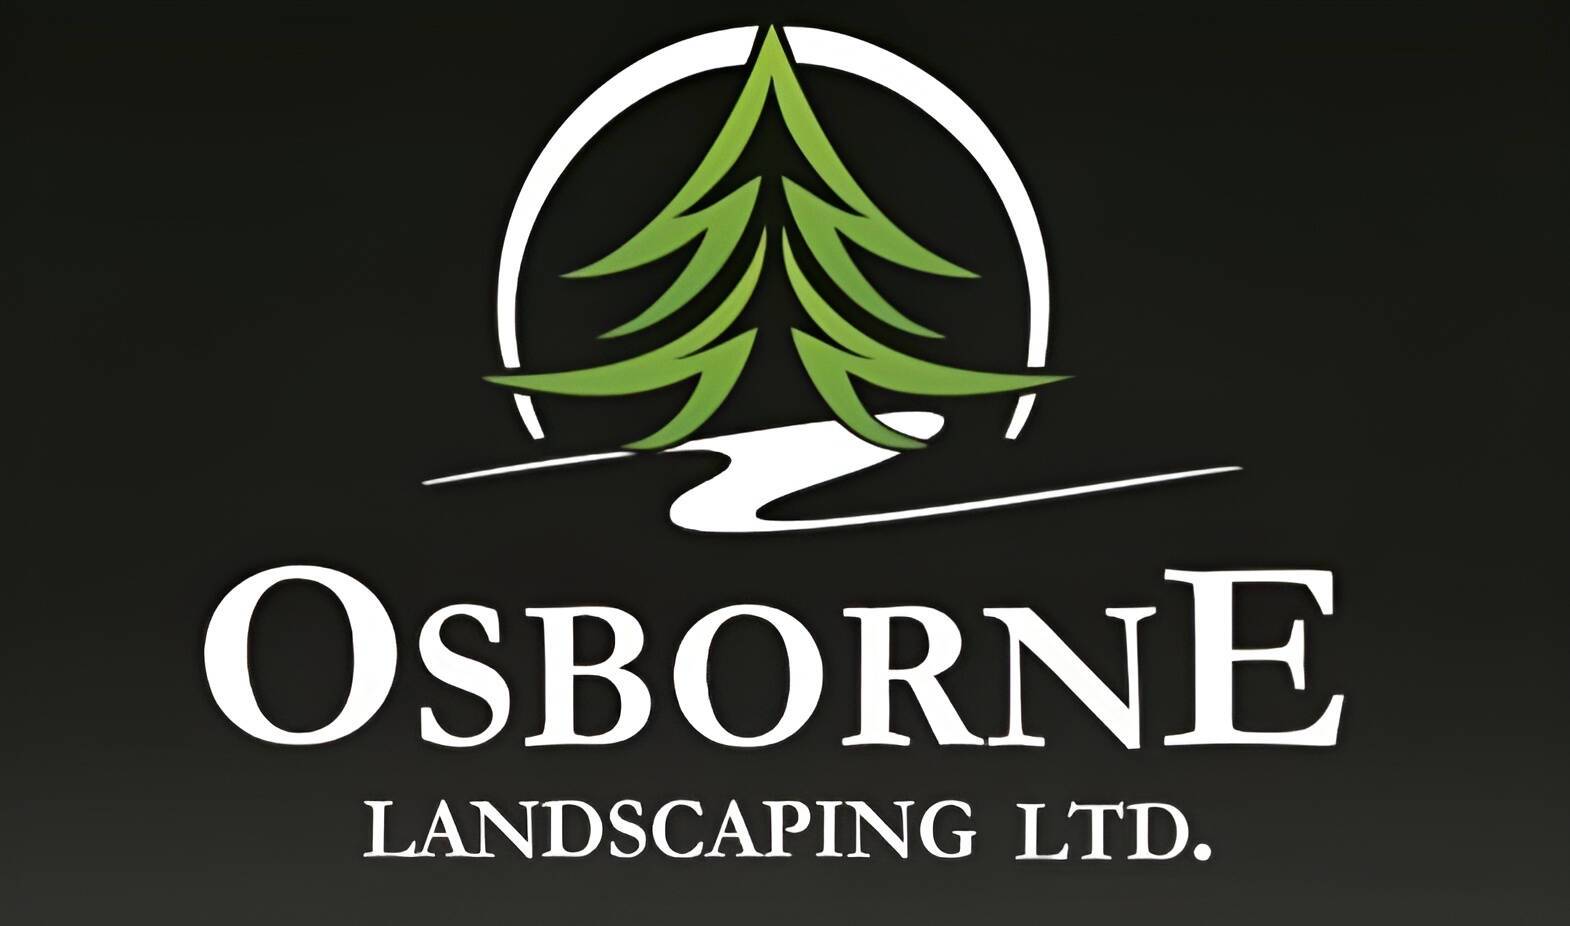 Osborne Landscaping